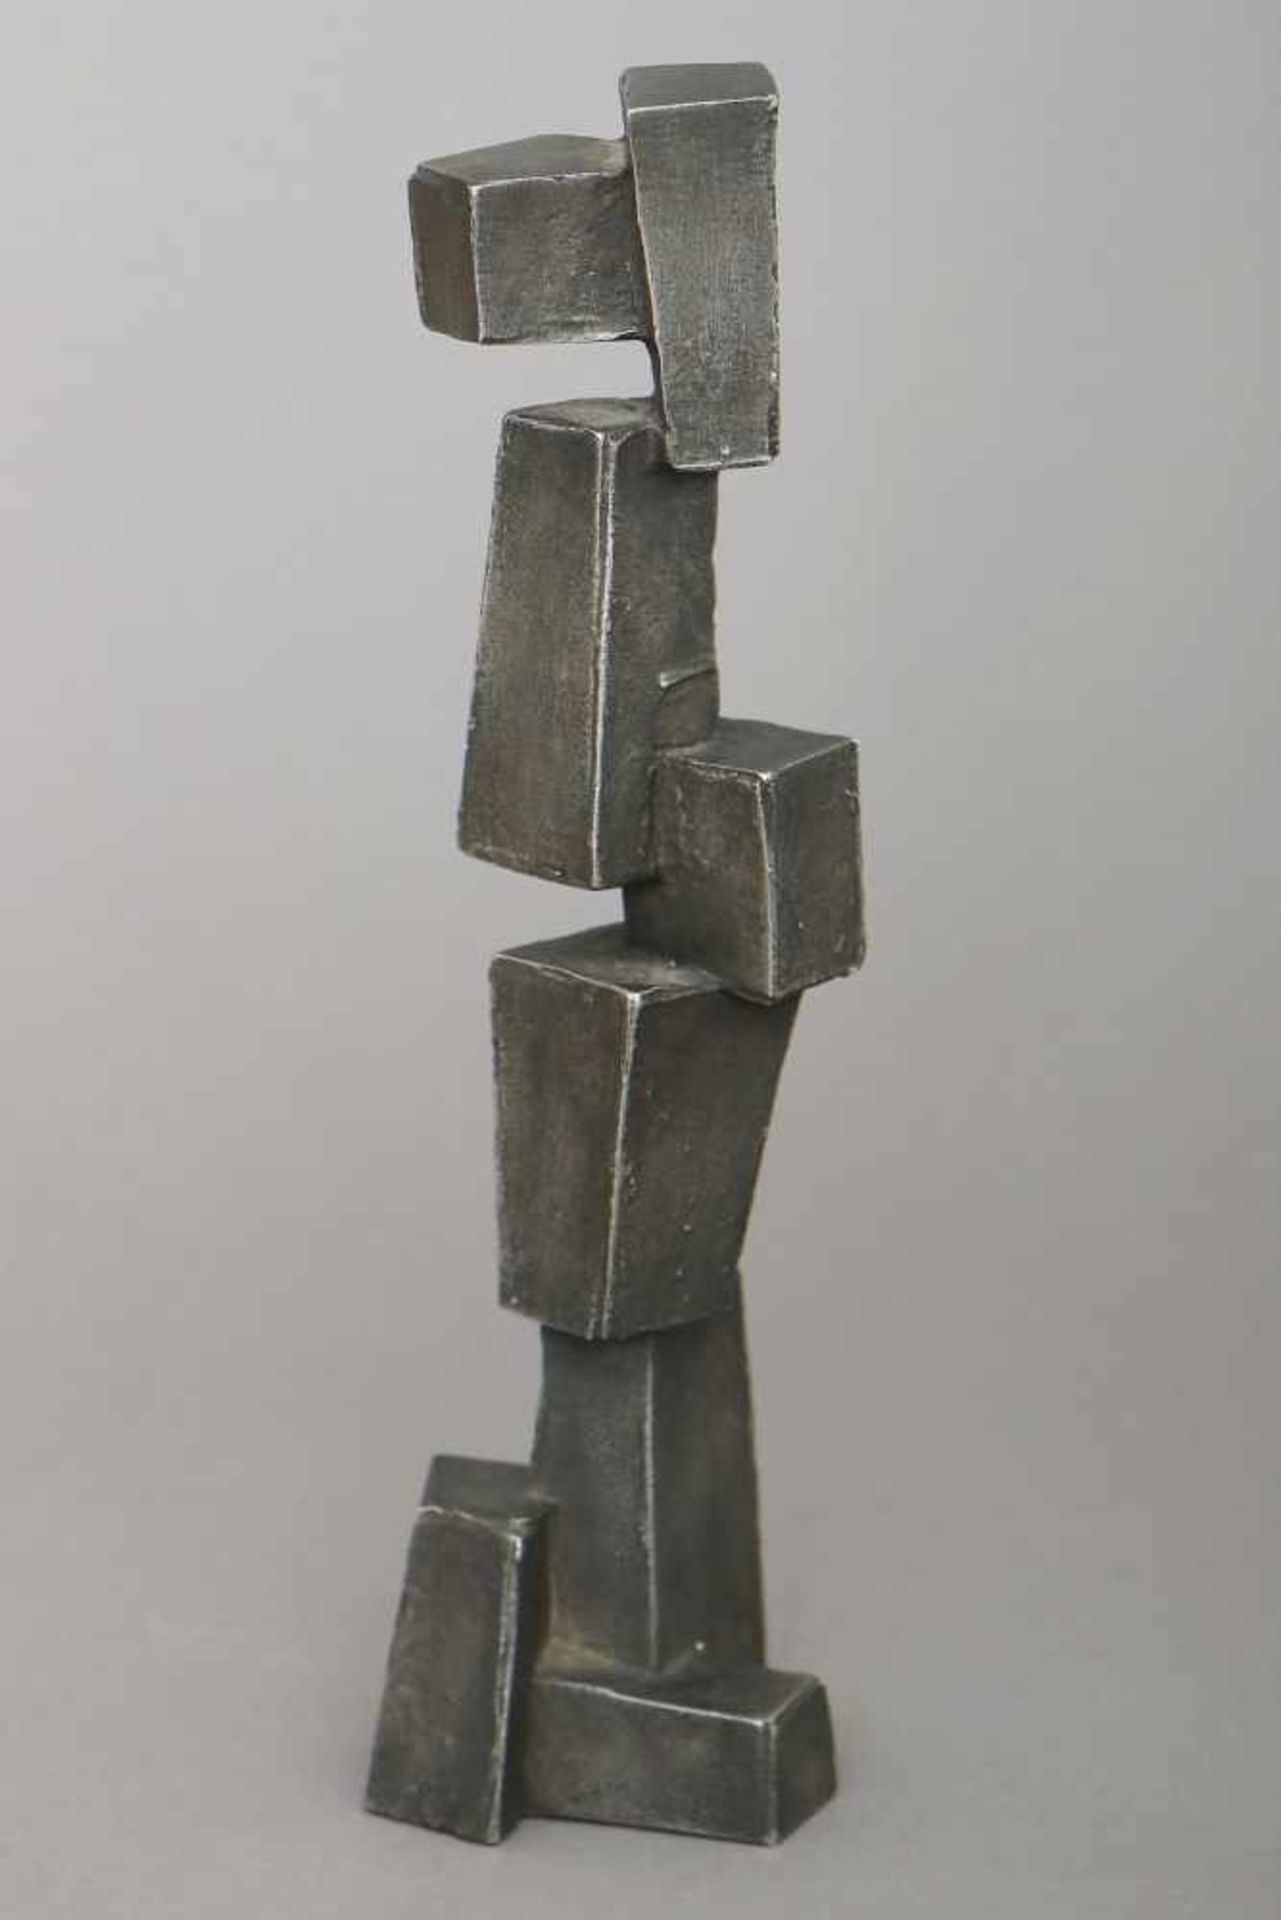 HANS STEINBRENNER (1928 - 2008) Bronzefigur ¨Stele¨ (in die Höhe gestapelte Blöcke)dunkel patiniert,